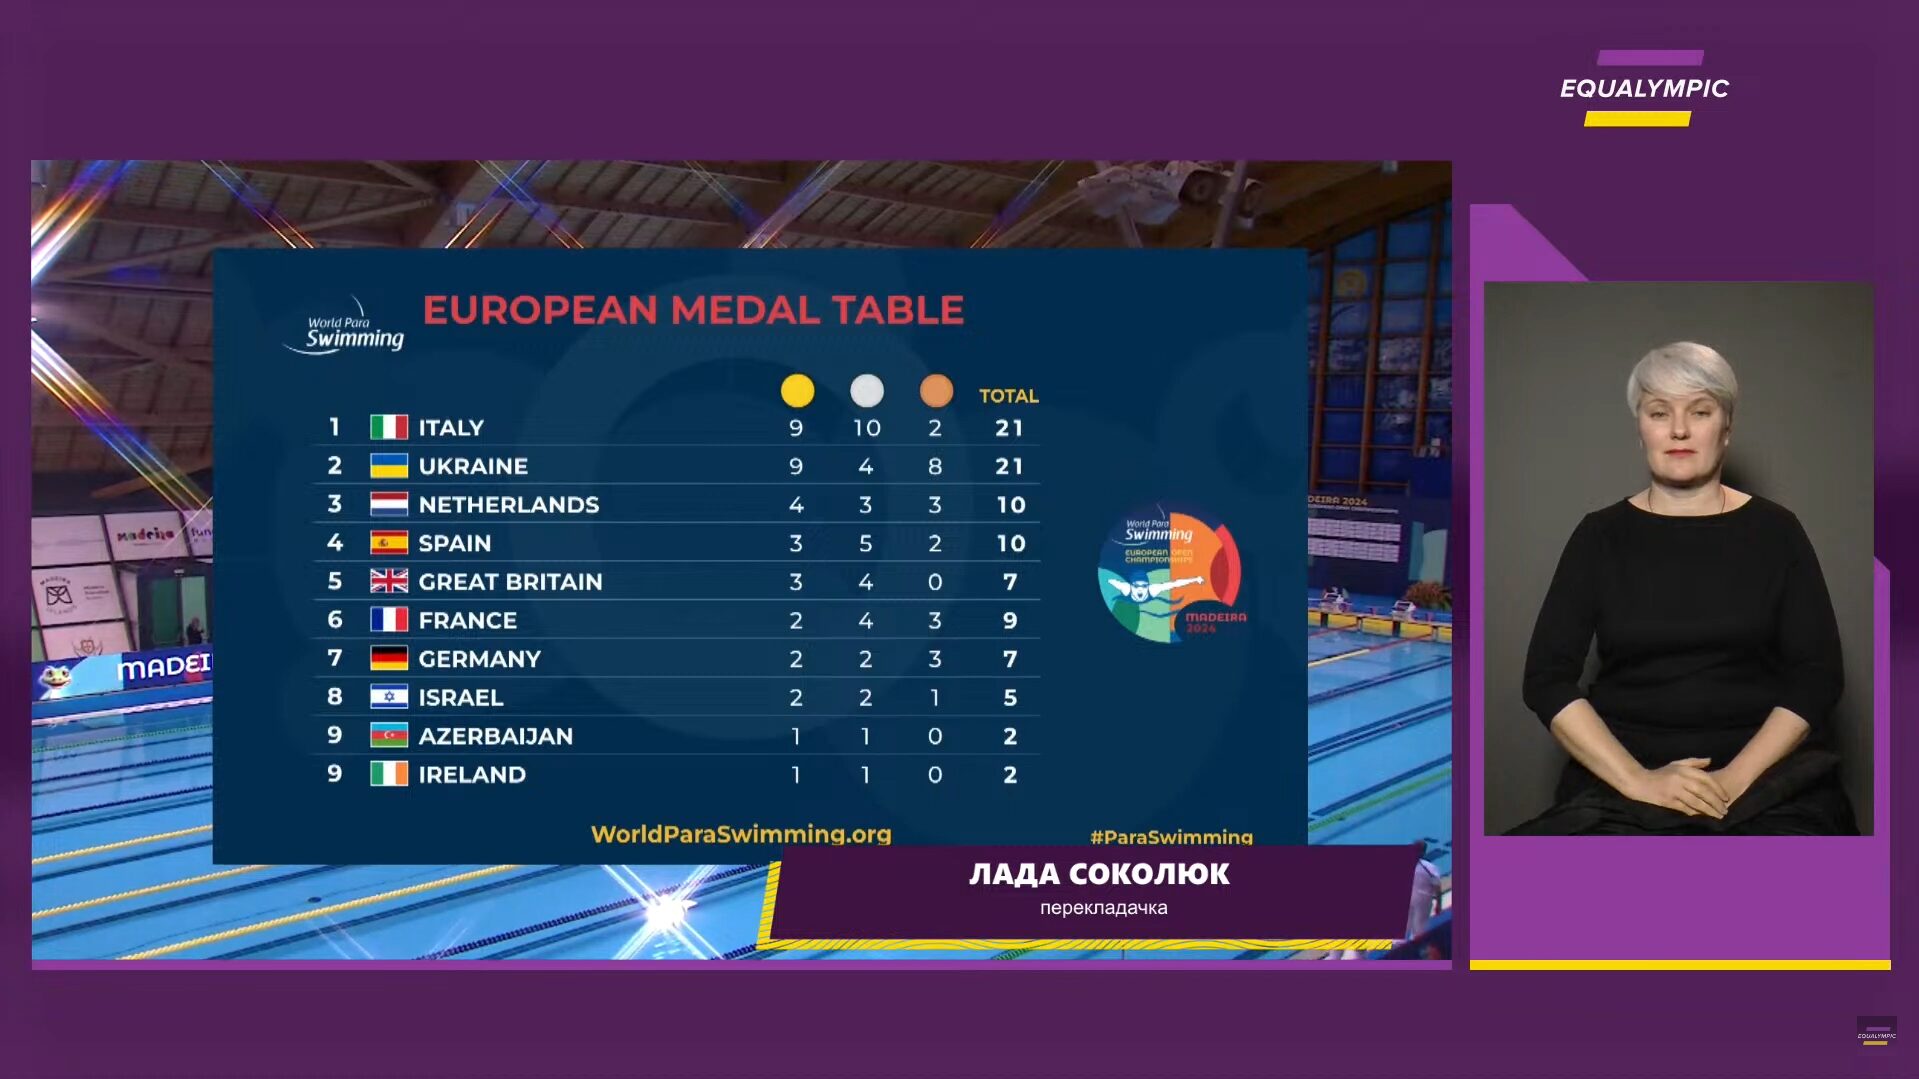 Результаты турнирной таблицы на чемпионате Европы по параплаванию. Фото: Equalimpic